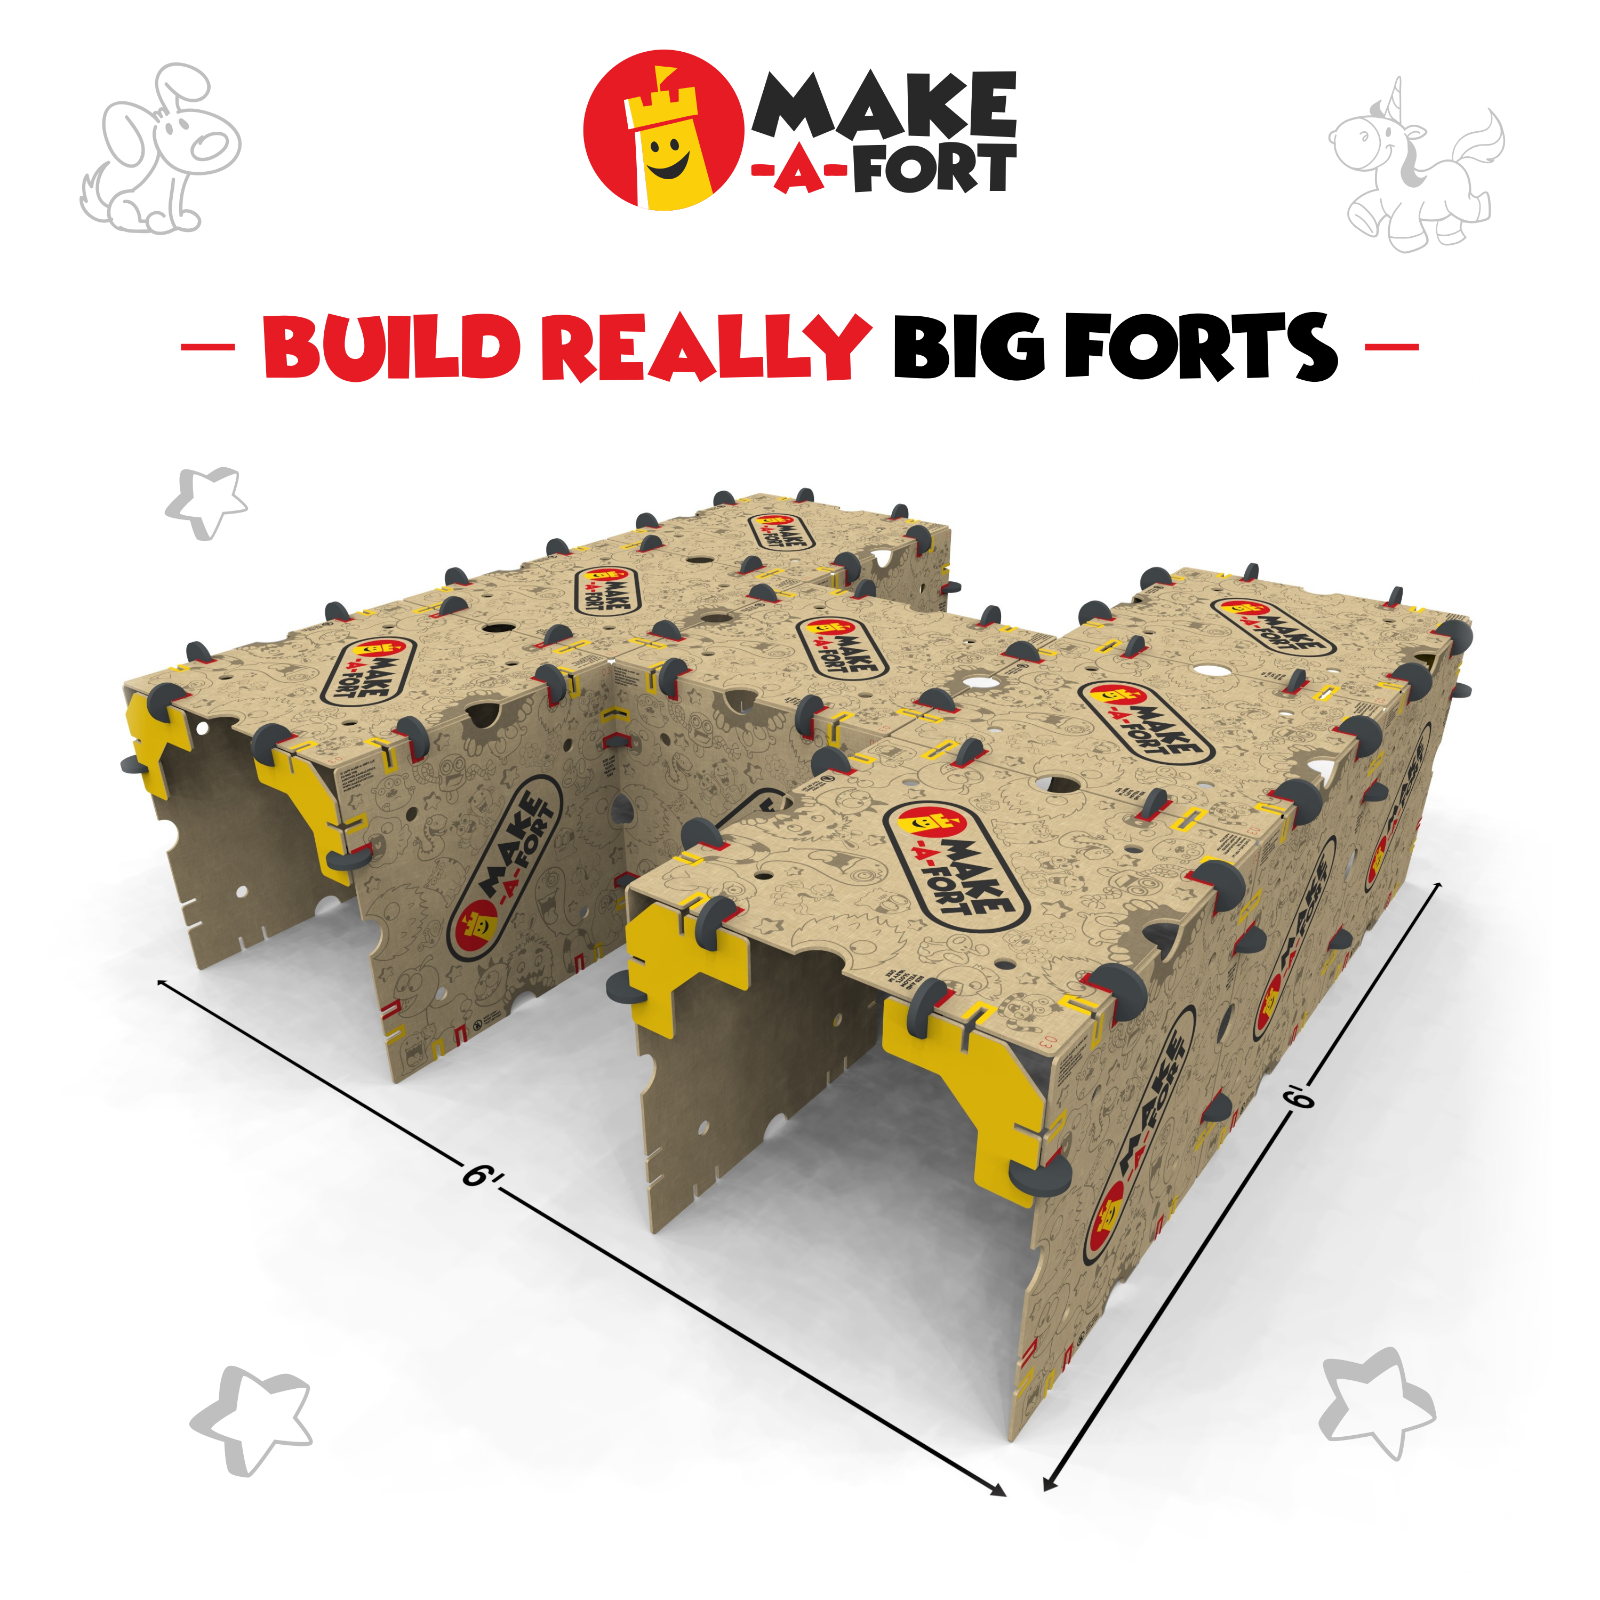 Make-A-Fort Building Kit for Kids - Box Fort - Build a Fort